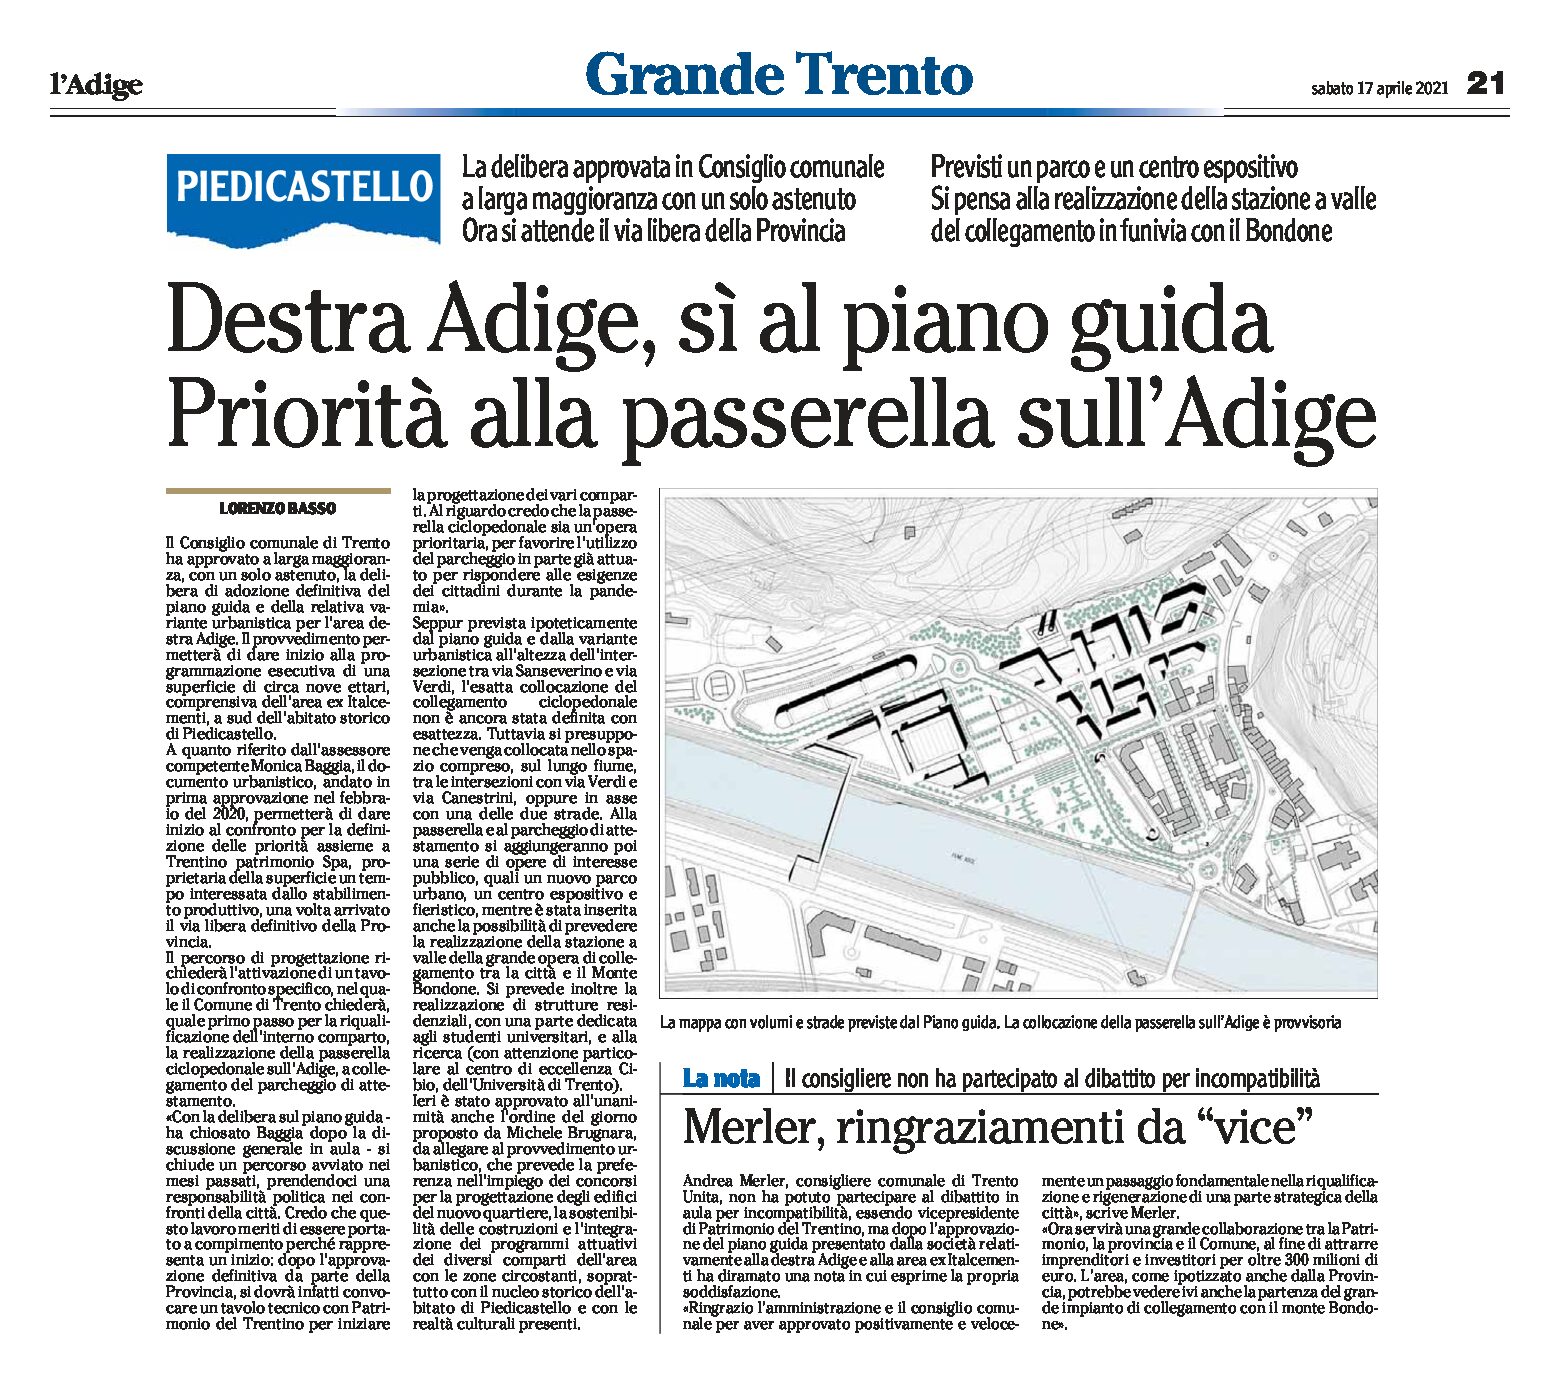 Trento, Destra Adige: sì al Piano guida. Priorità alla passerella sull’Adige